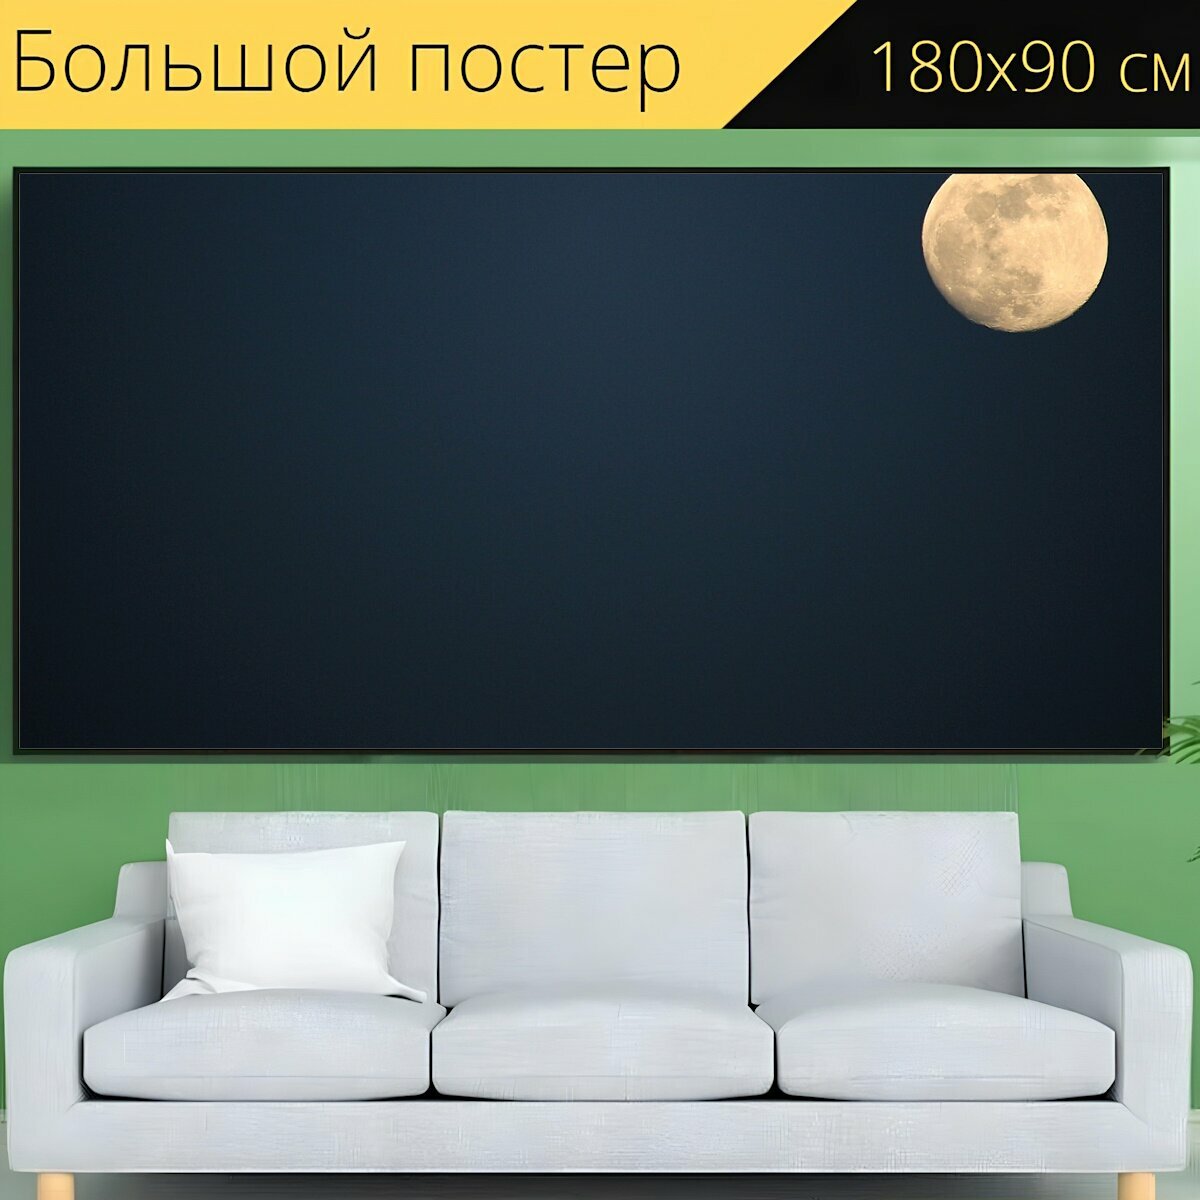 Большой постер "Луна, ночь, полнолуние" 180 x 90 см. для интерьера